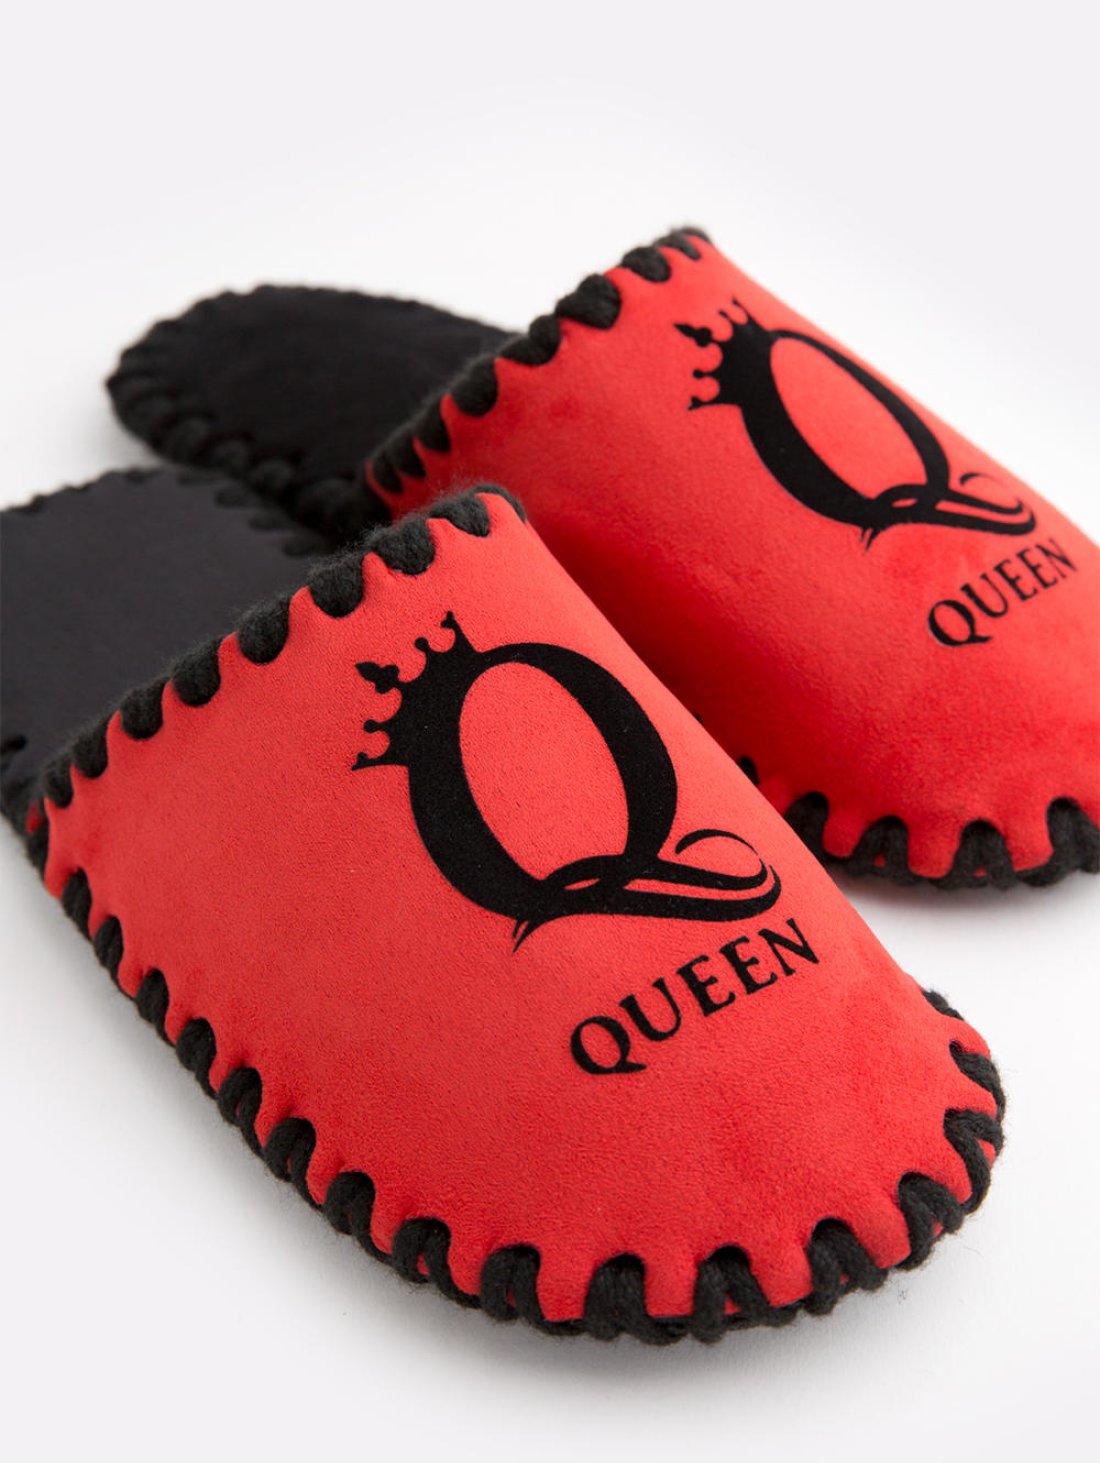 Закрытые Женские тапочки для дома с надписью Queen, Красного цвета. Family Story Фото- 3